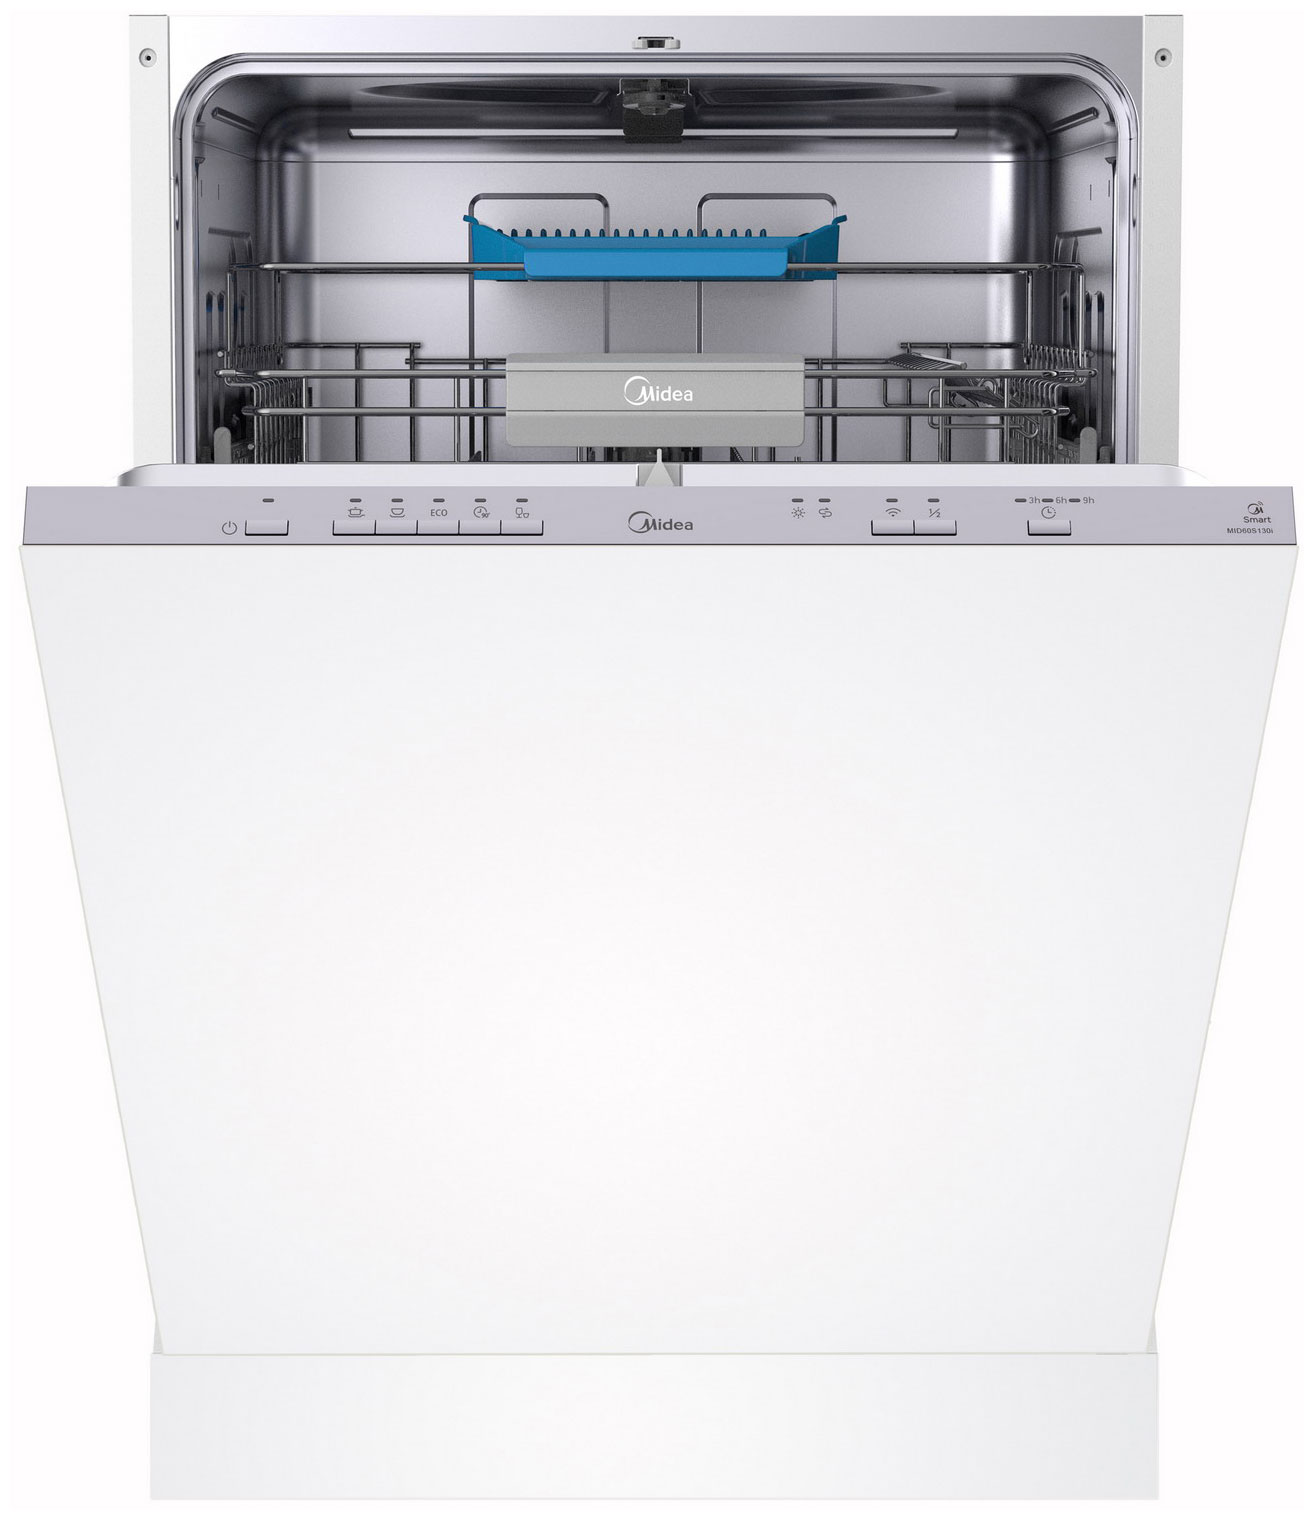 Встраиваемая посудомоечная машина Midea MID60S130i встраиваемая посудомоечная машина midea mid60s430i